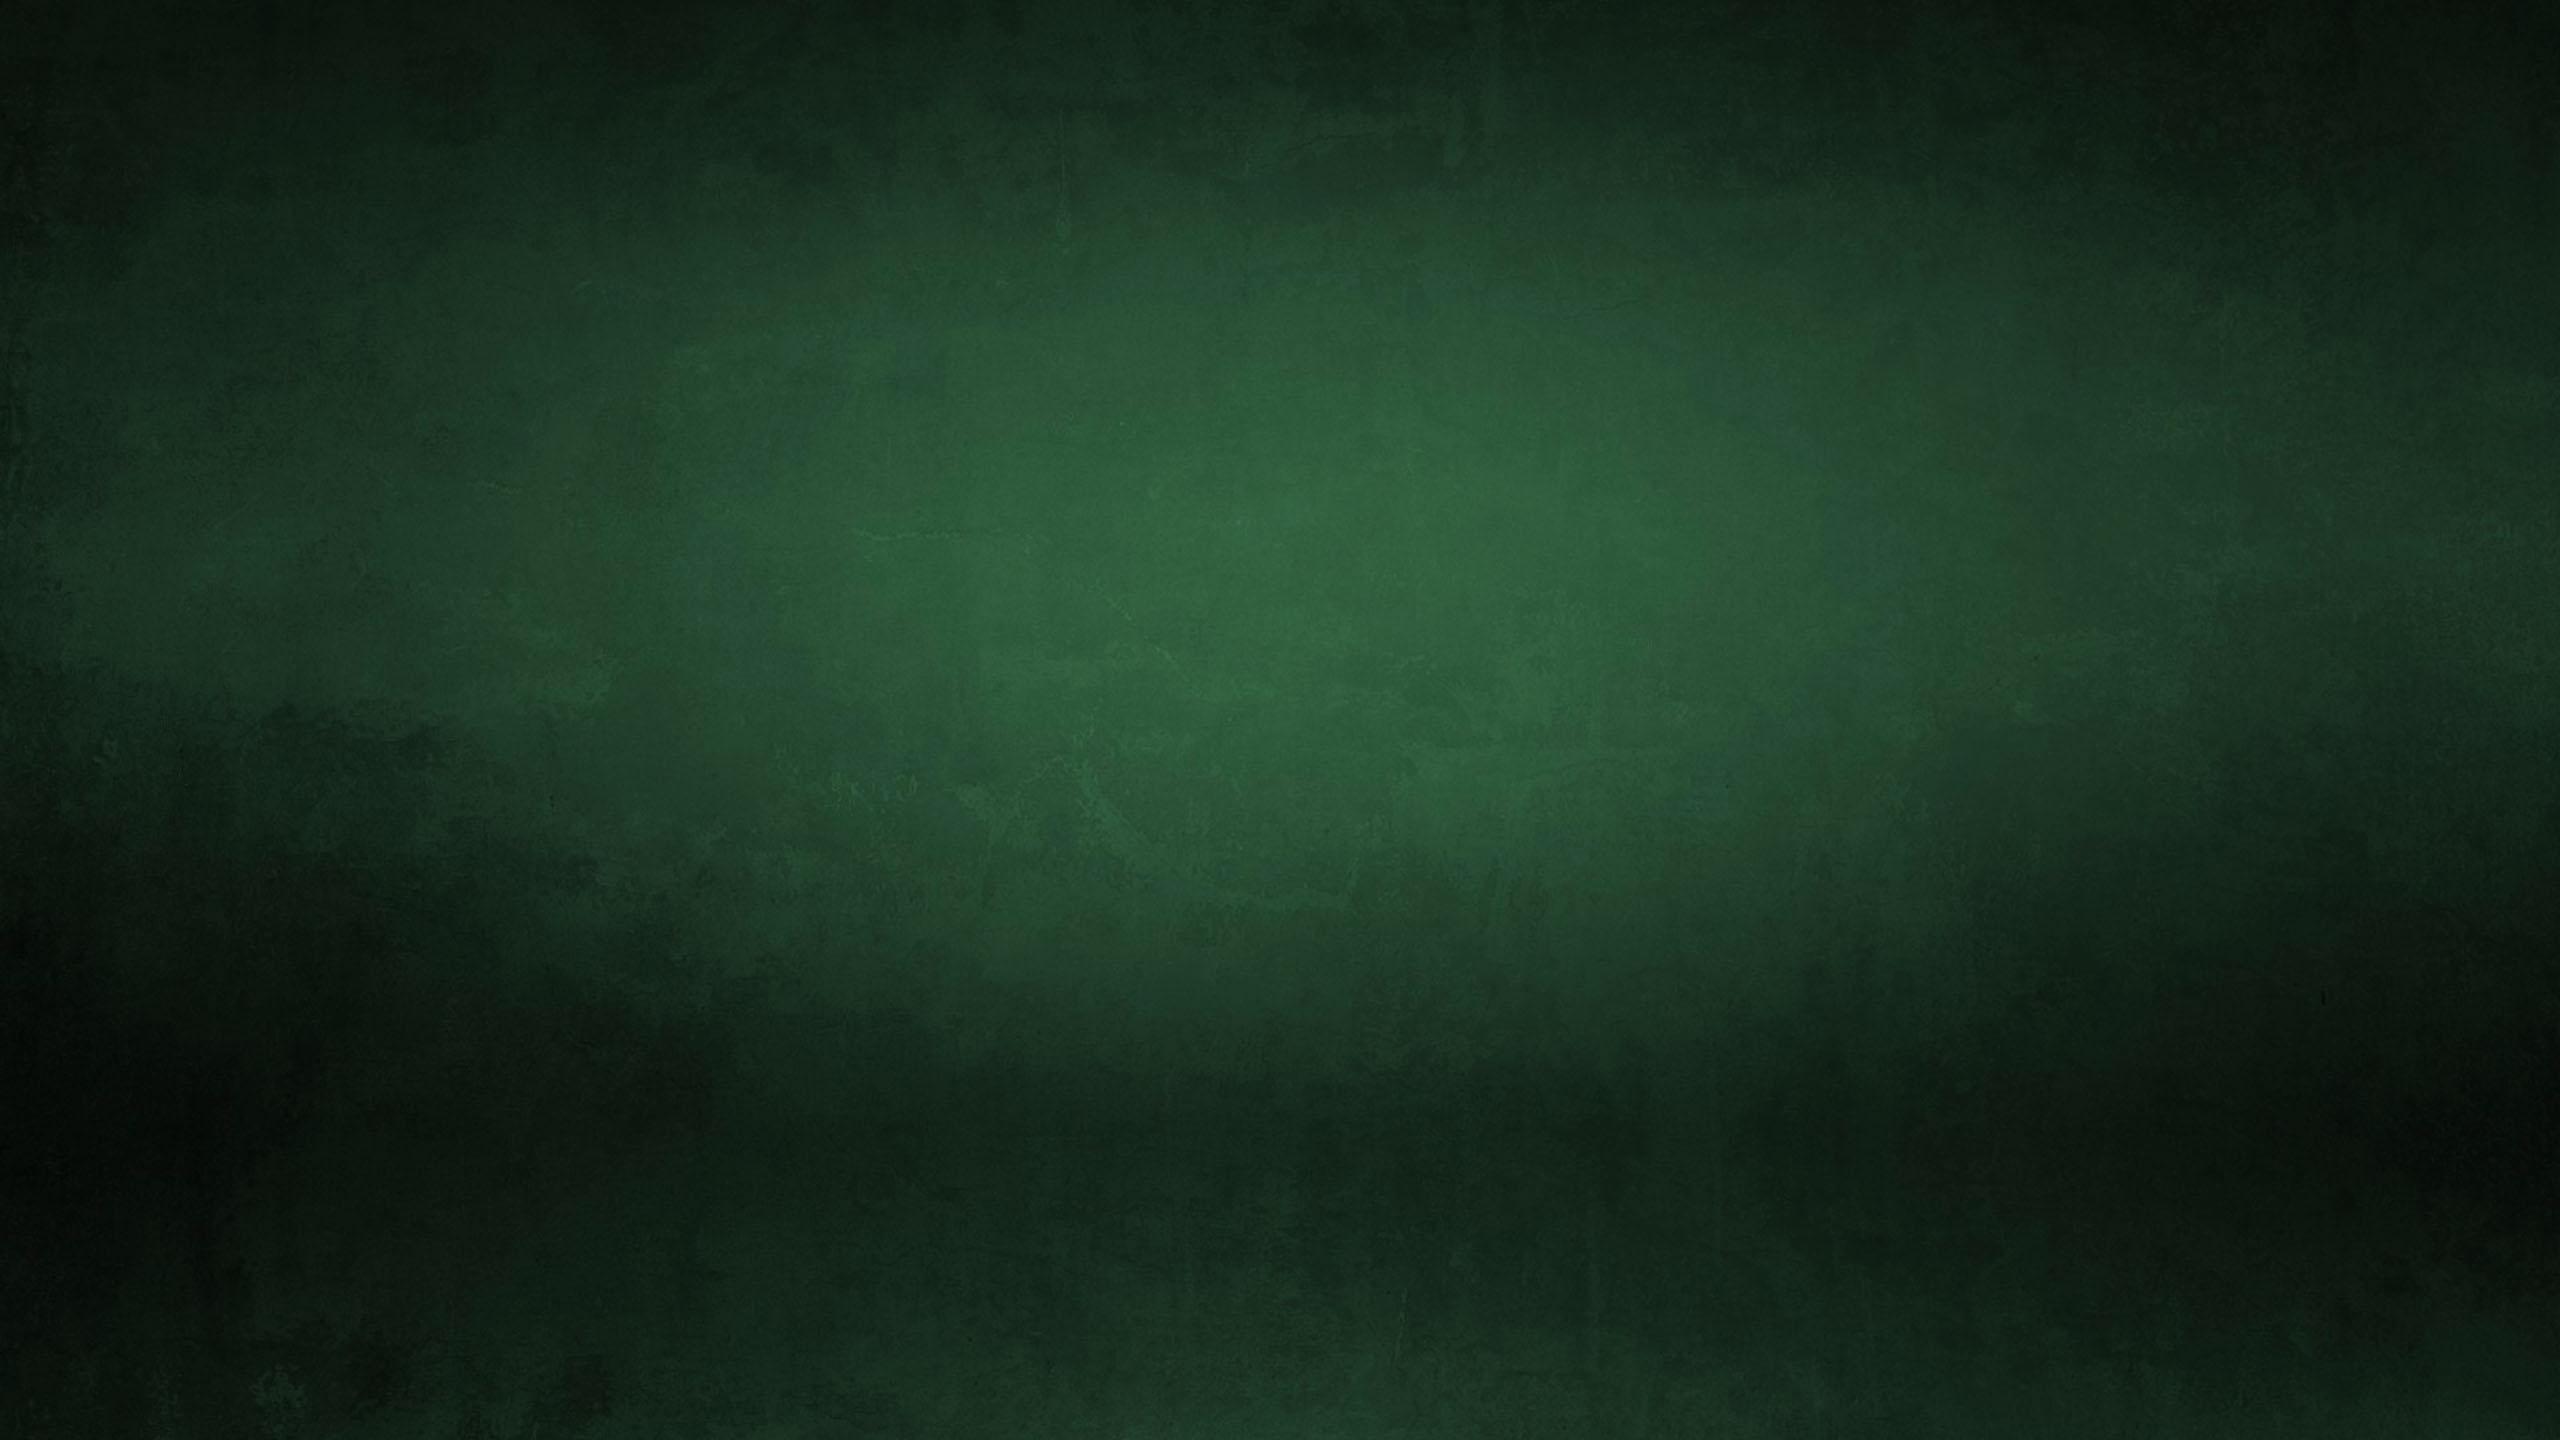 Dark Green Grunge Wallpapers là sự kết hợp giữa màu xanh và phong cách Grunge. Hình nền này sẽ mang đến cho bạn một không gian làm việc hoặc giải trí thật độc đáo và hiện đại. Hãy tìm kiếm và tải xuống ngay hình nền Grunge xanh đậm đẹp nhất để trang trí cho máy tính của bạn!